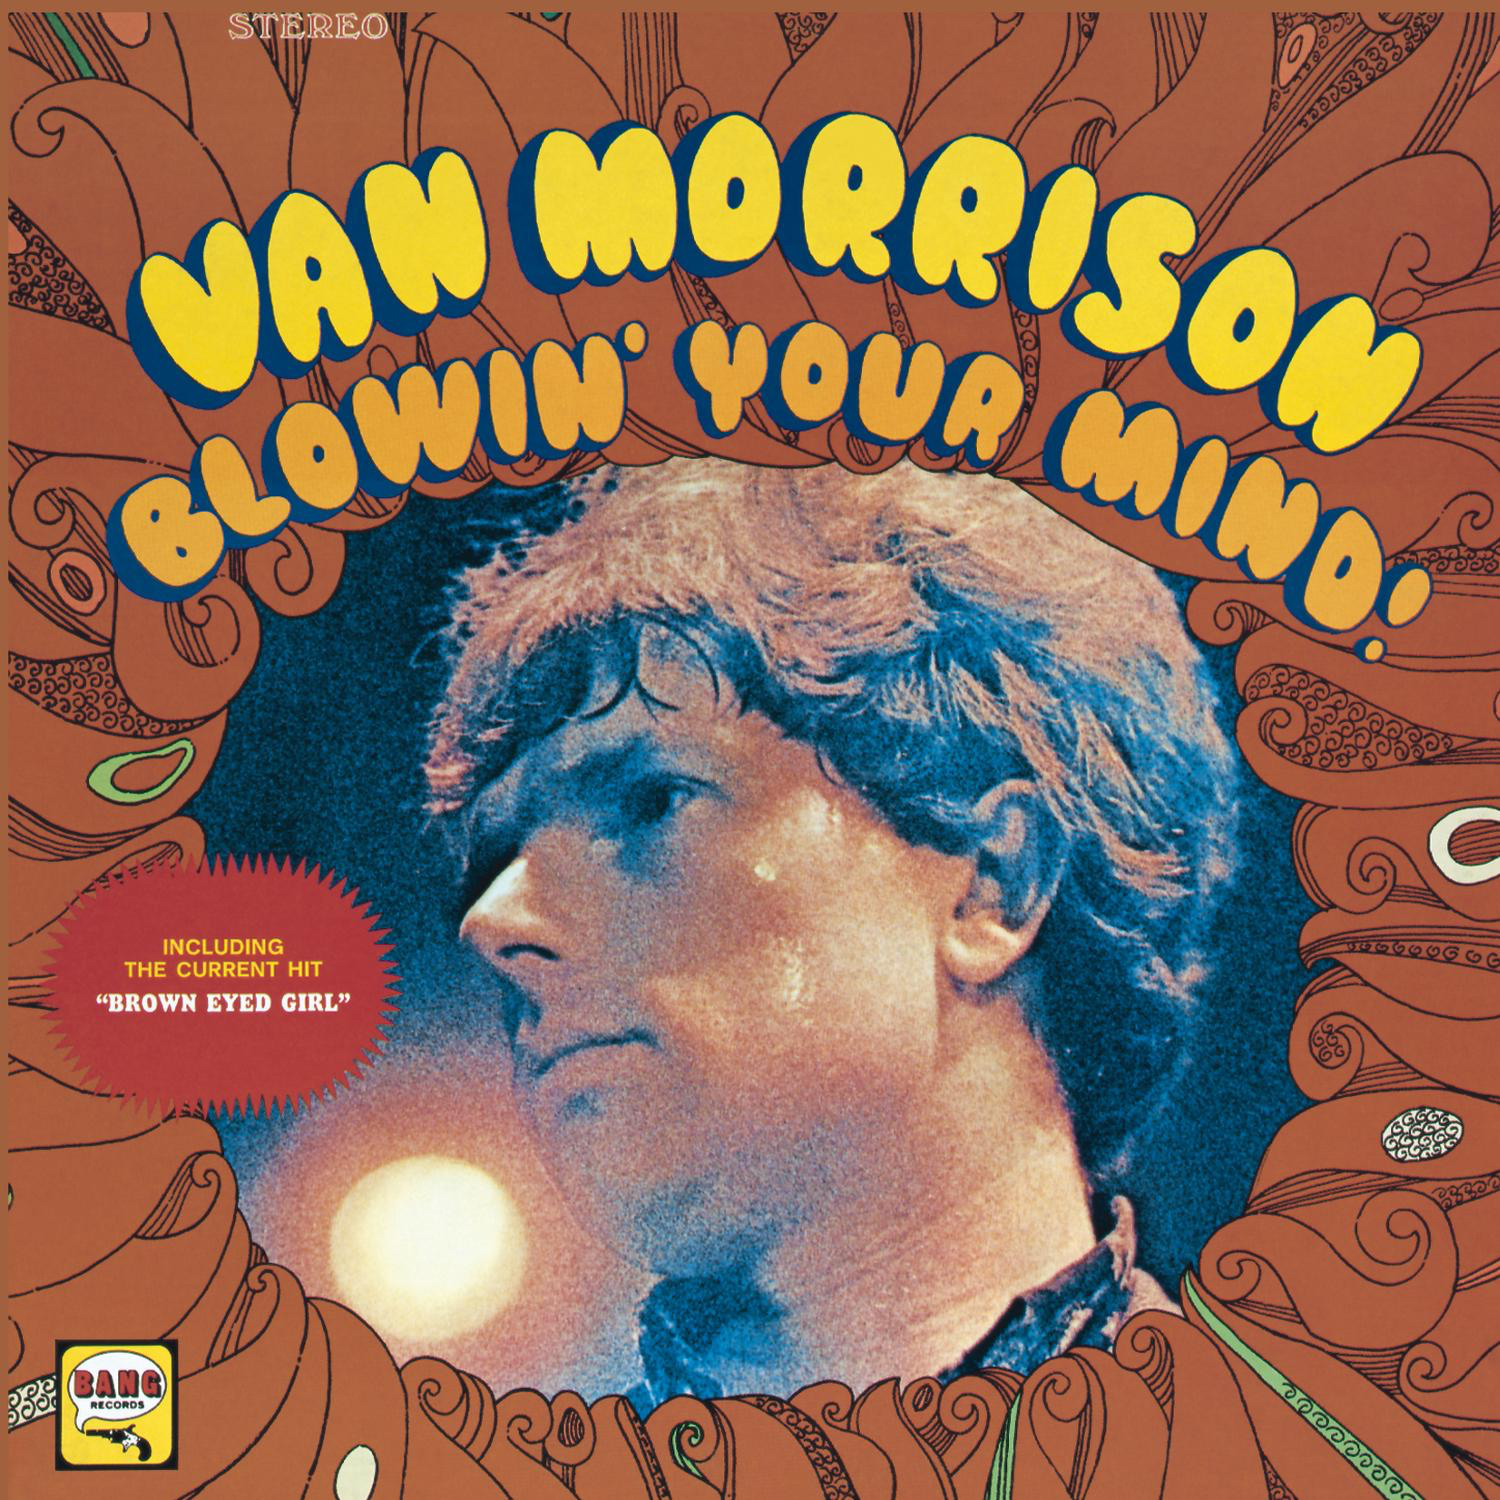 Van Morrison - 1967 - Blowin' Your Mind! [2020] 24-192